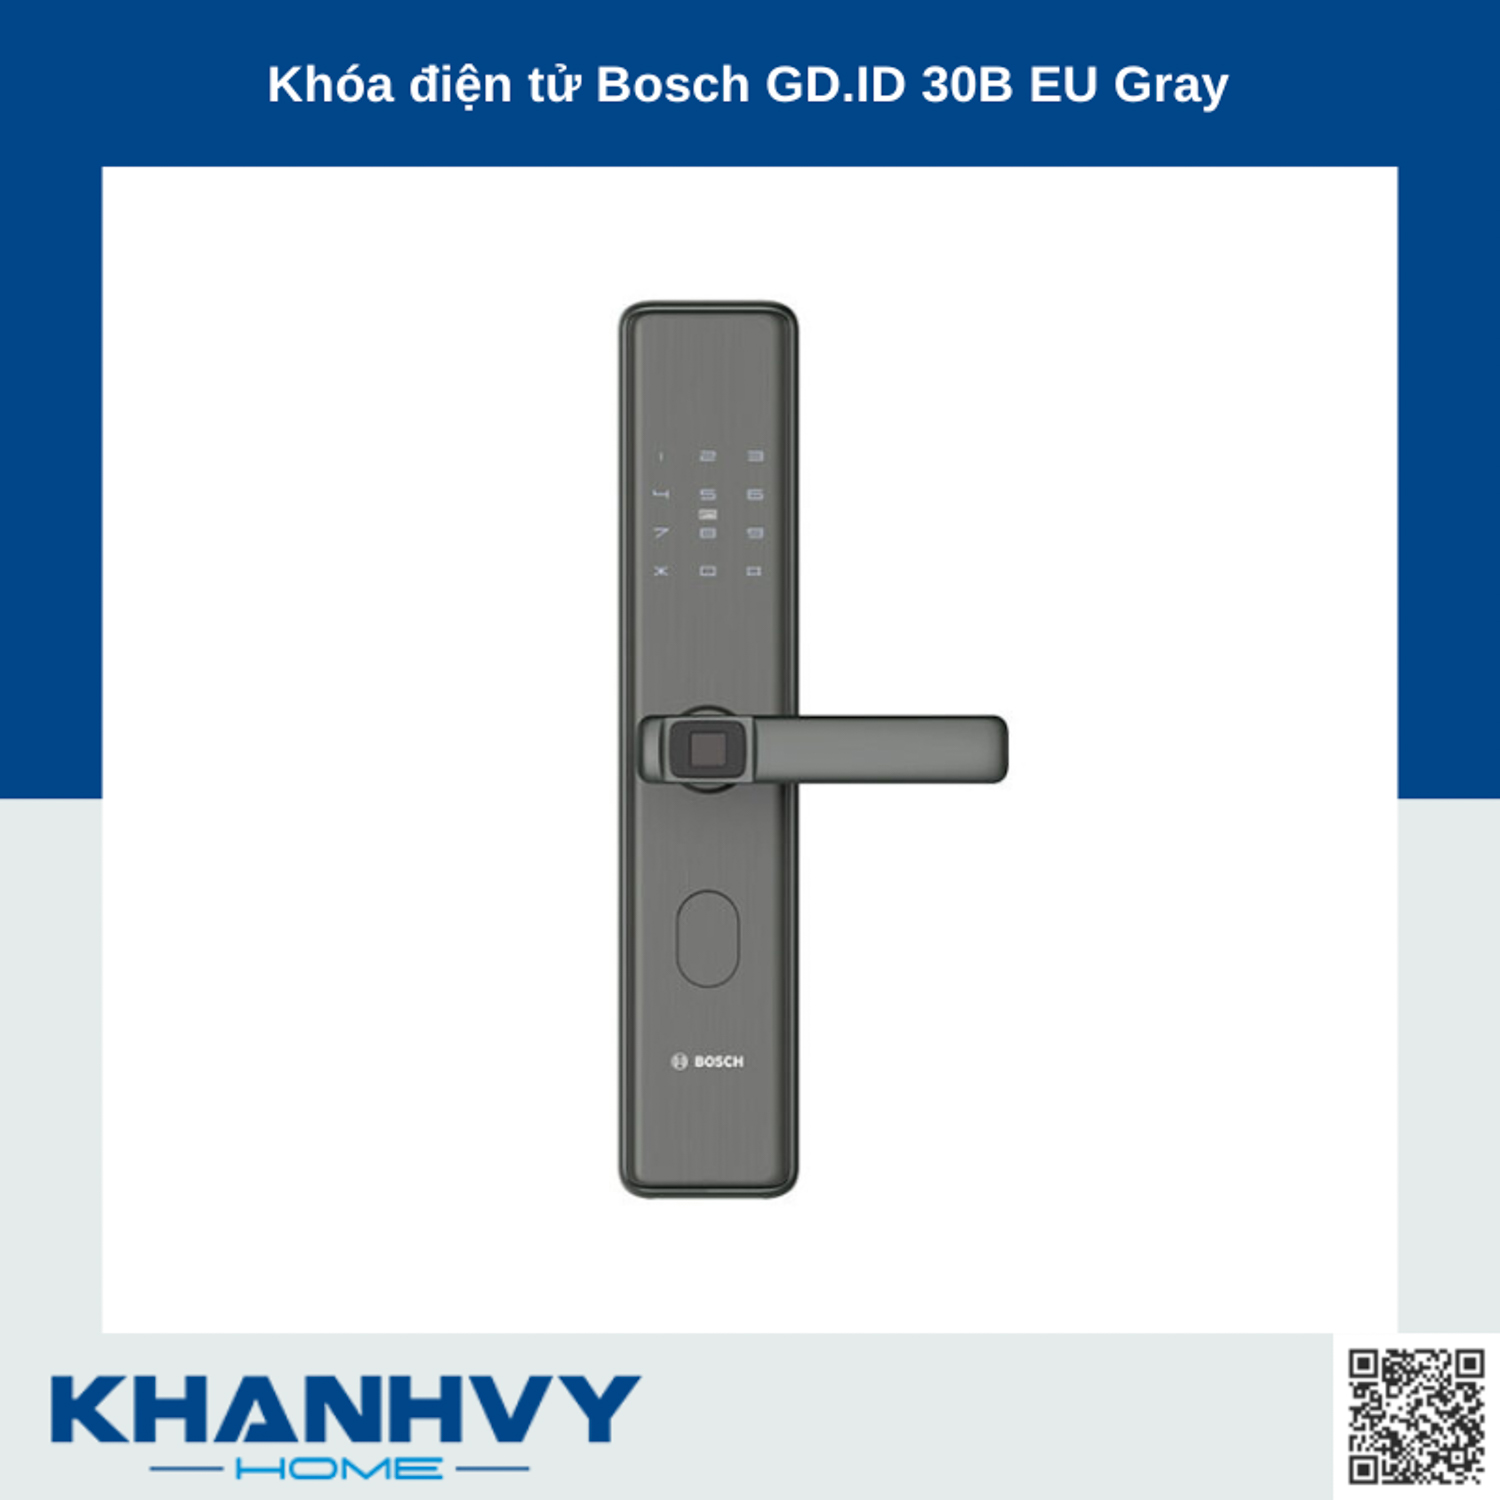 Khóa điện tử Bosch GD.ID 30B EU Gray tích hợp nhiều tính năng hiện đại